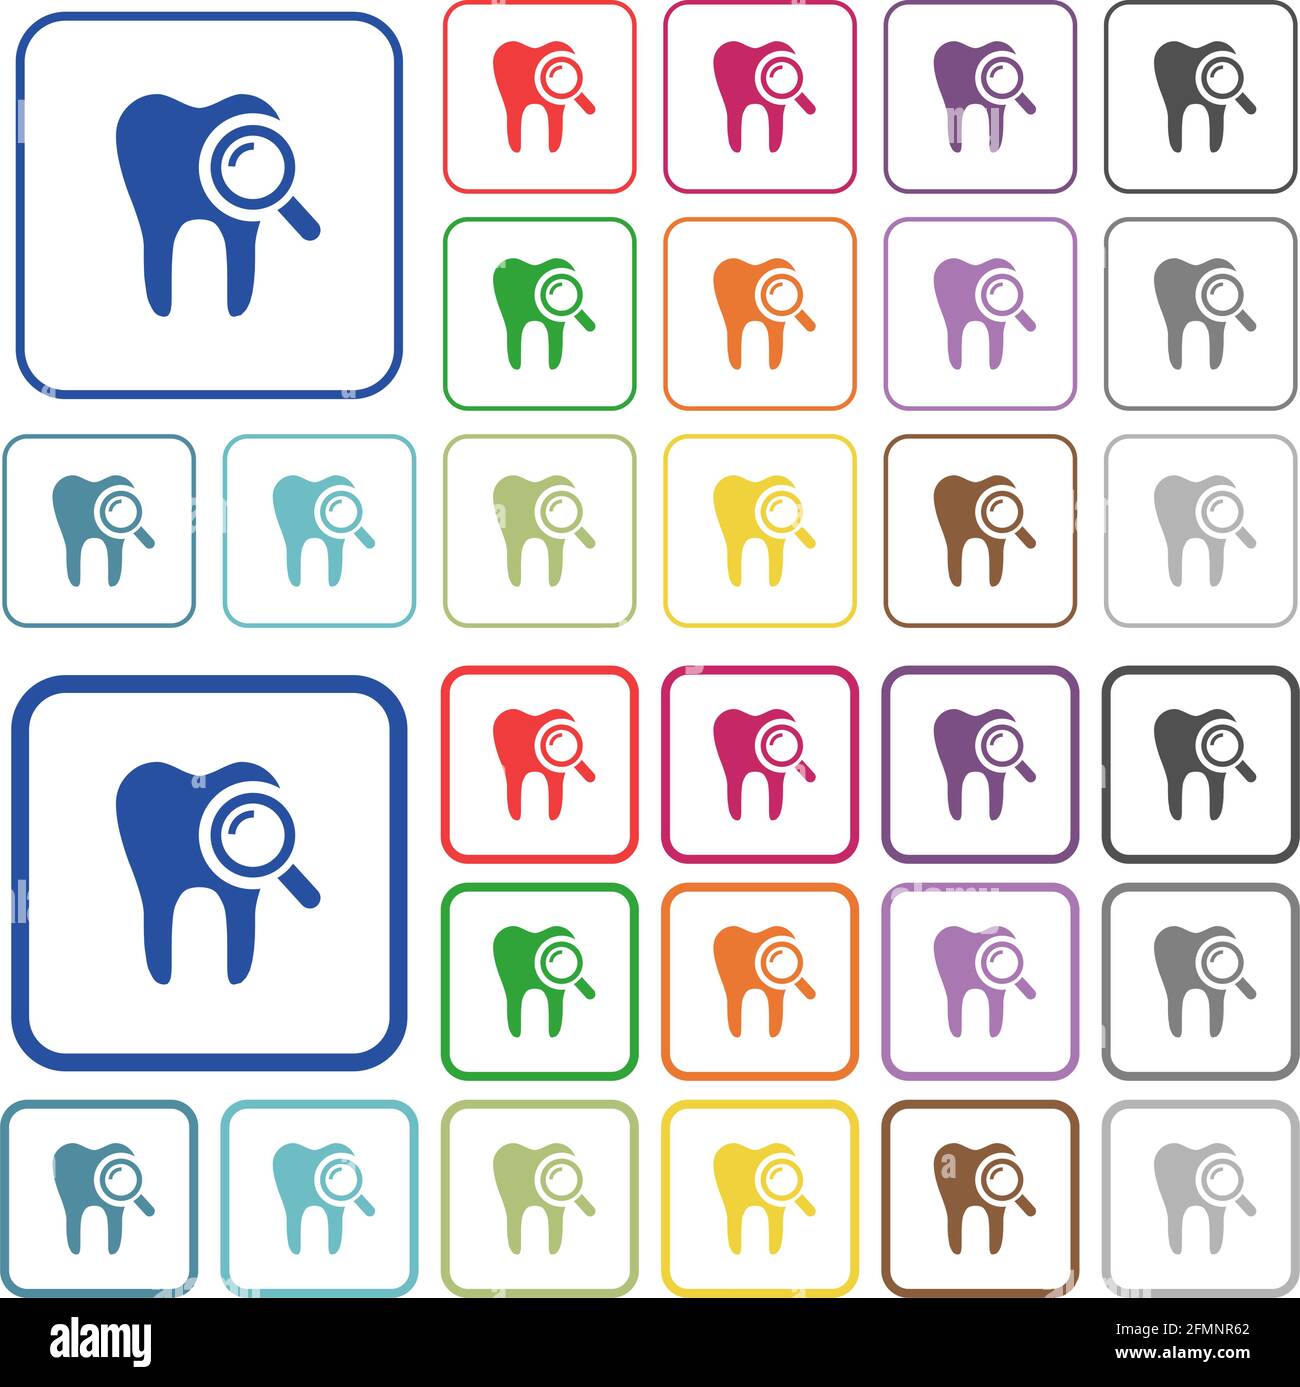 L'examen dentaire affiche des icônes plates dans des cadres carrés arrondis. Versions minces et épaisses incluses. Illustration de Vecteur